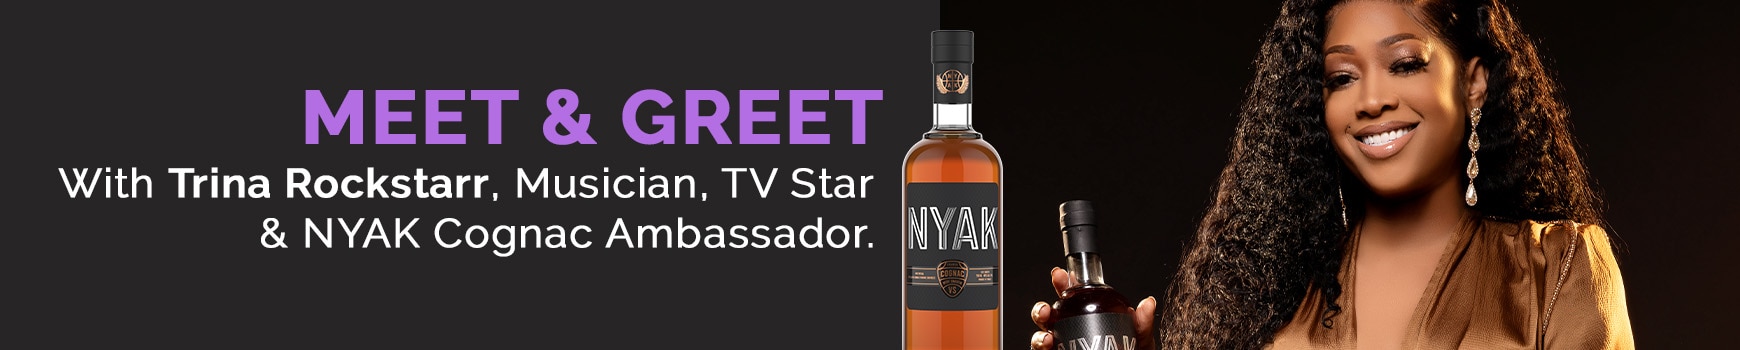 Meet & Greet with Trina Rockstarr, Musician, TV Star & NYAK Cognac Ambassador.